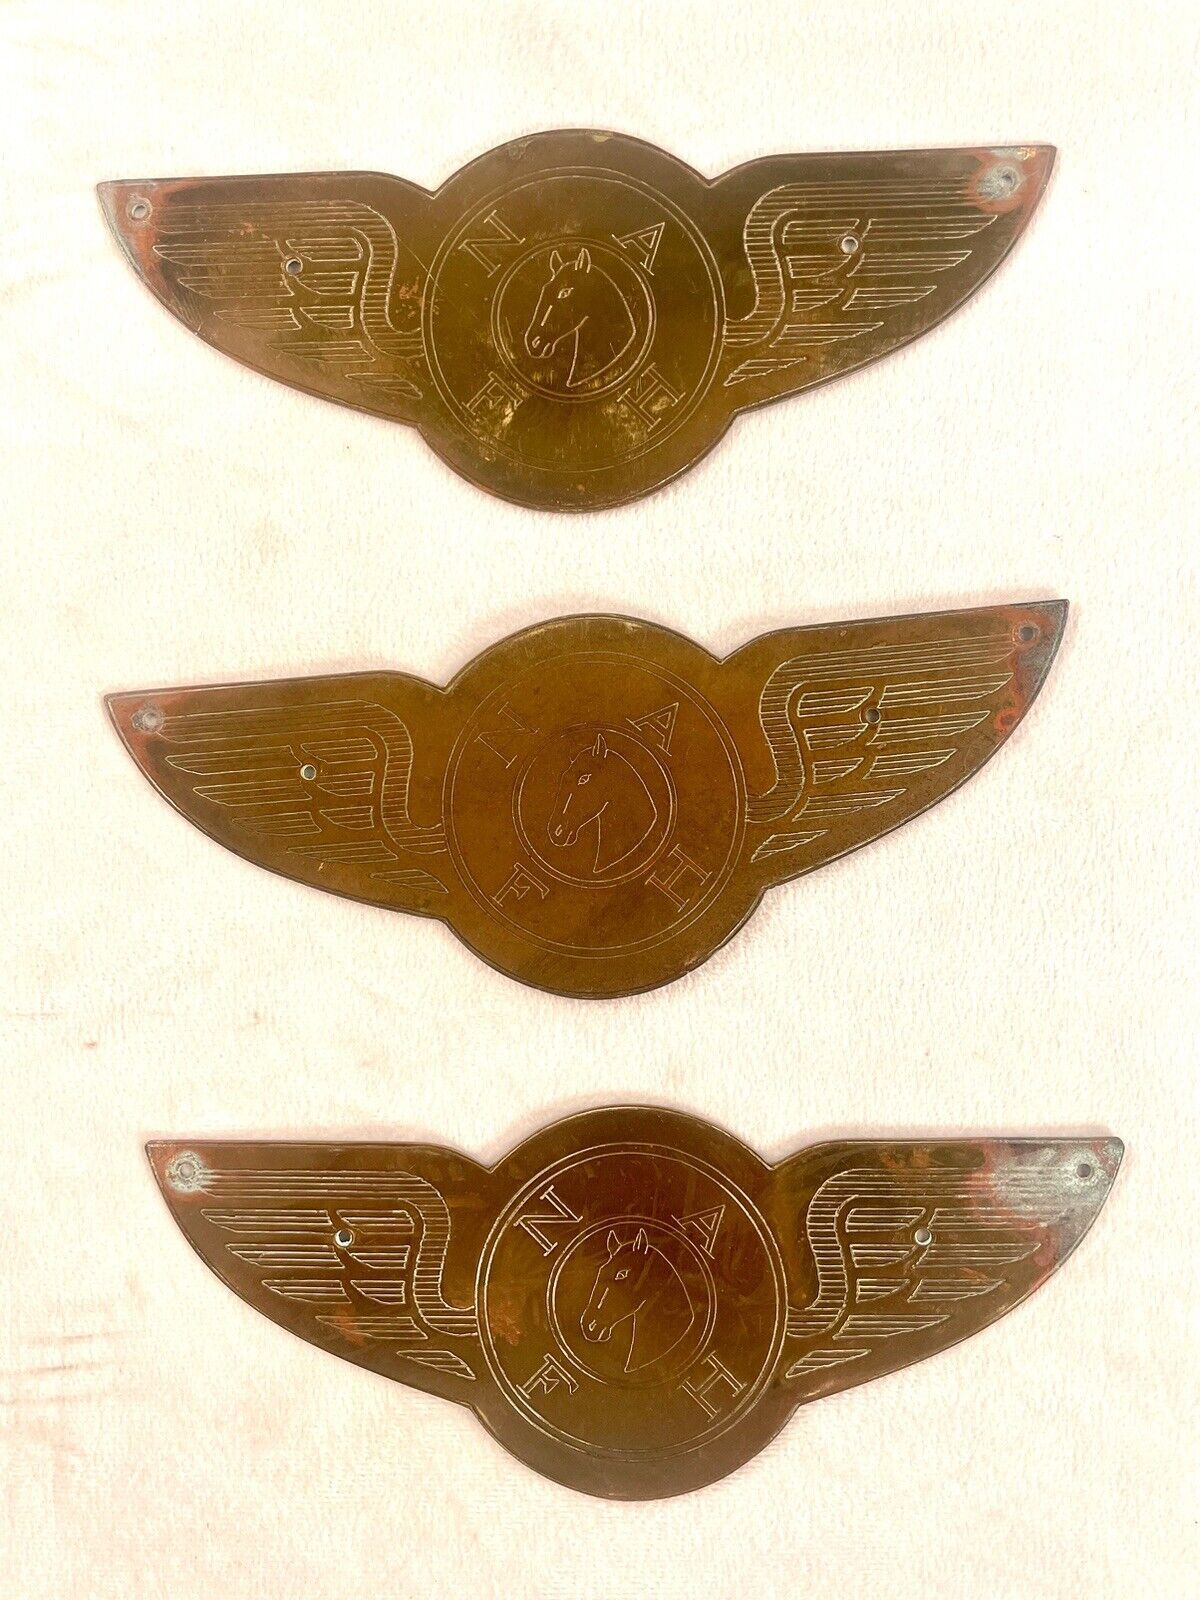 Antique Arabian Horse Foundation brass plaques - 3 Pieces